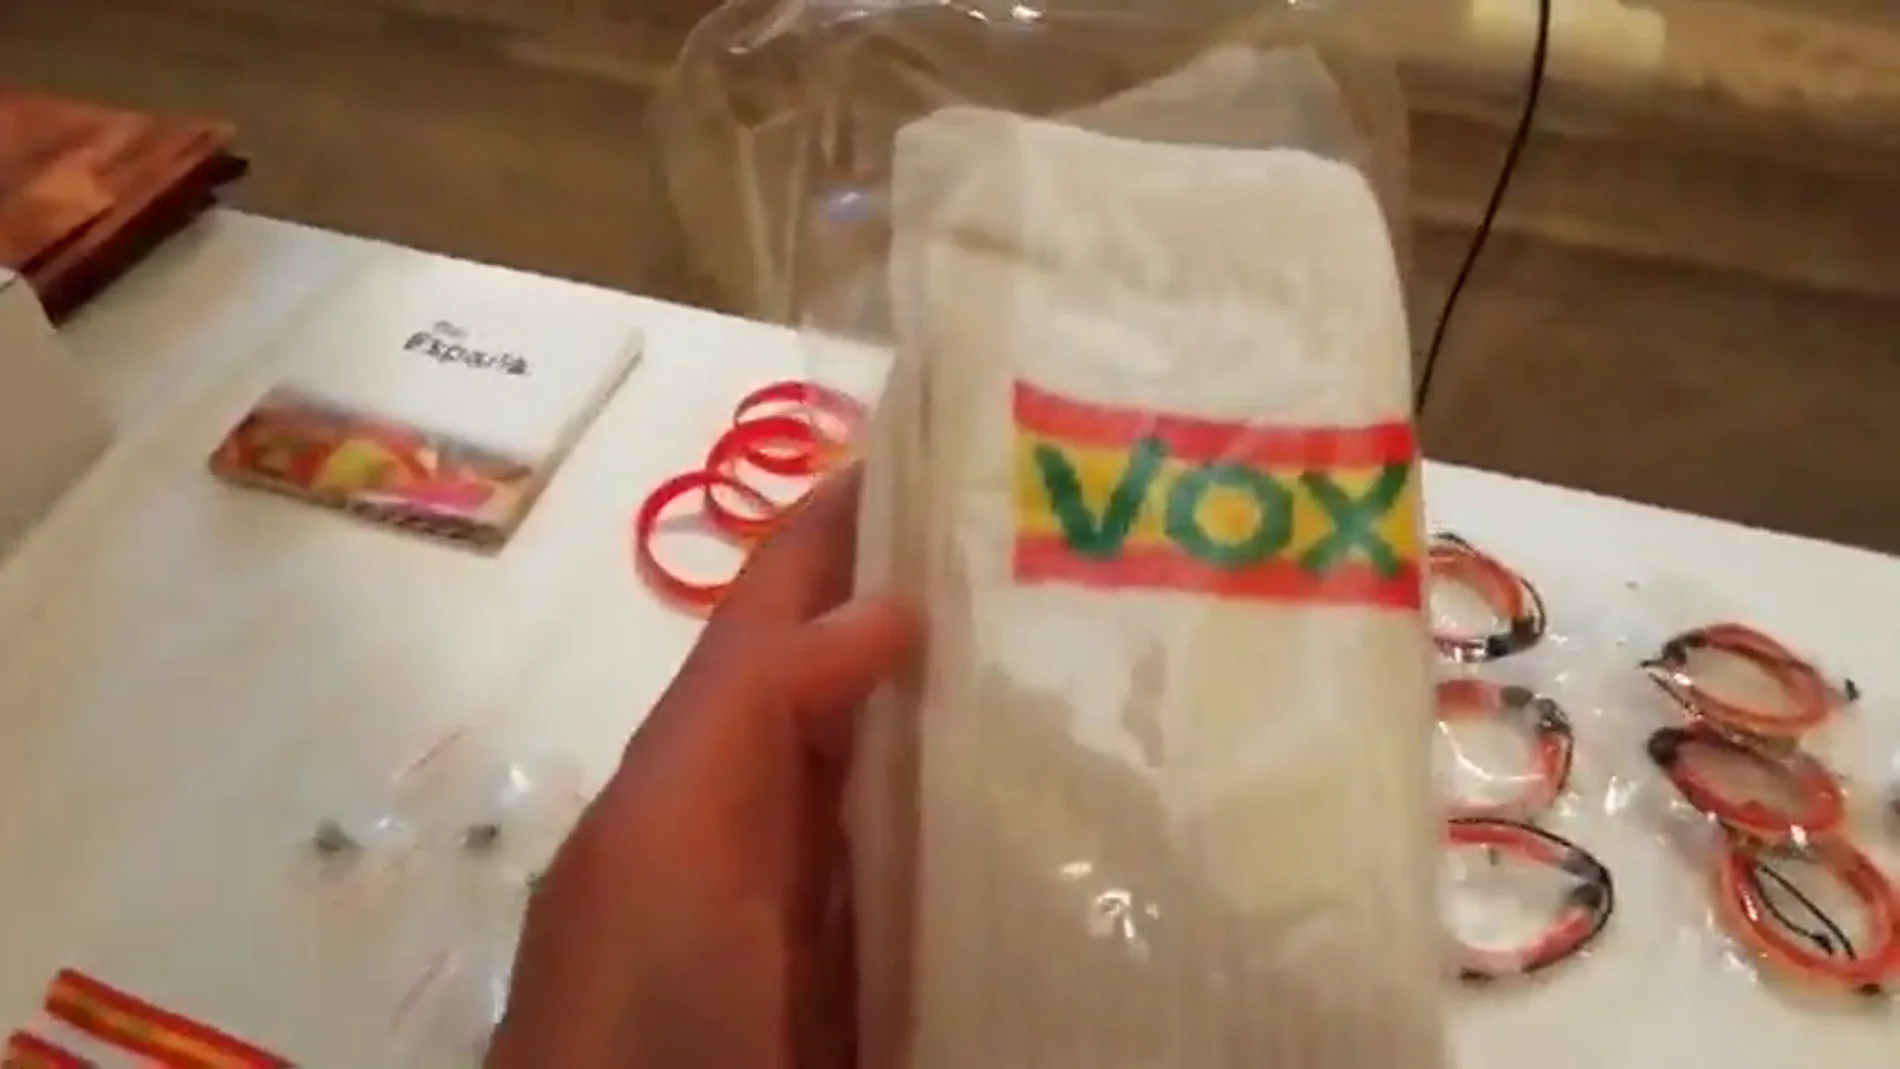 Calcetines de Vox